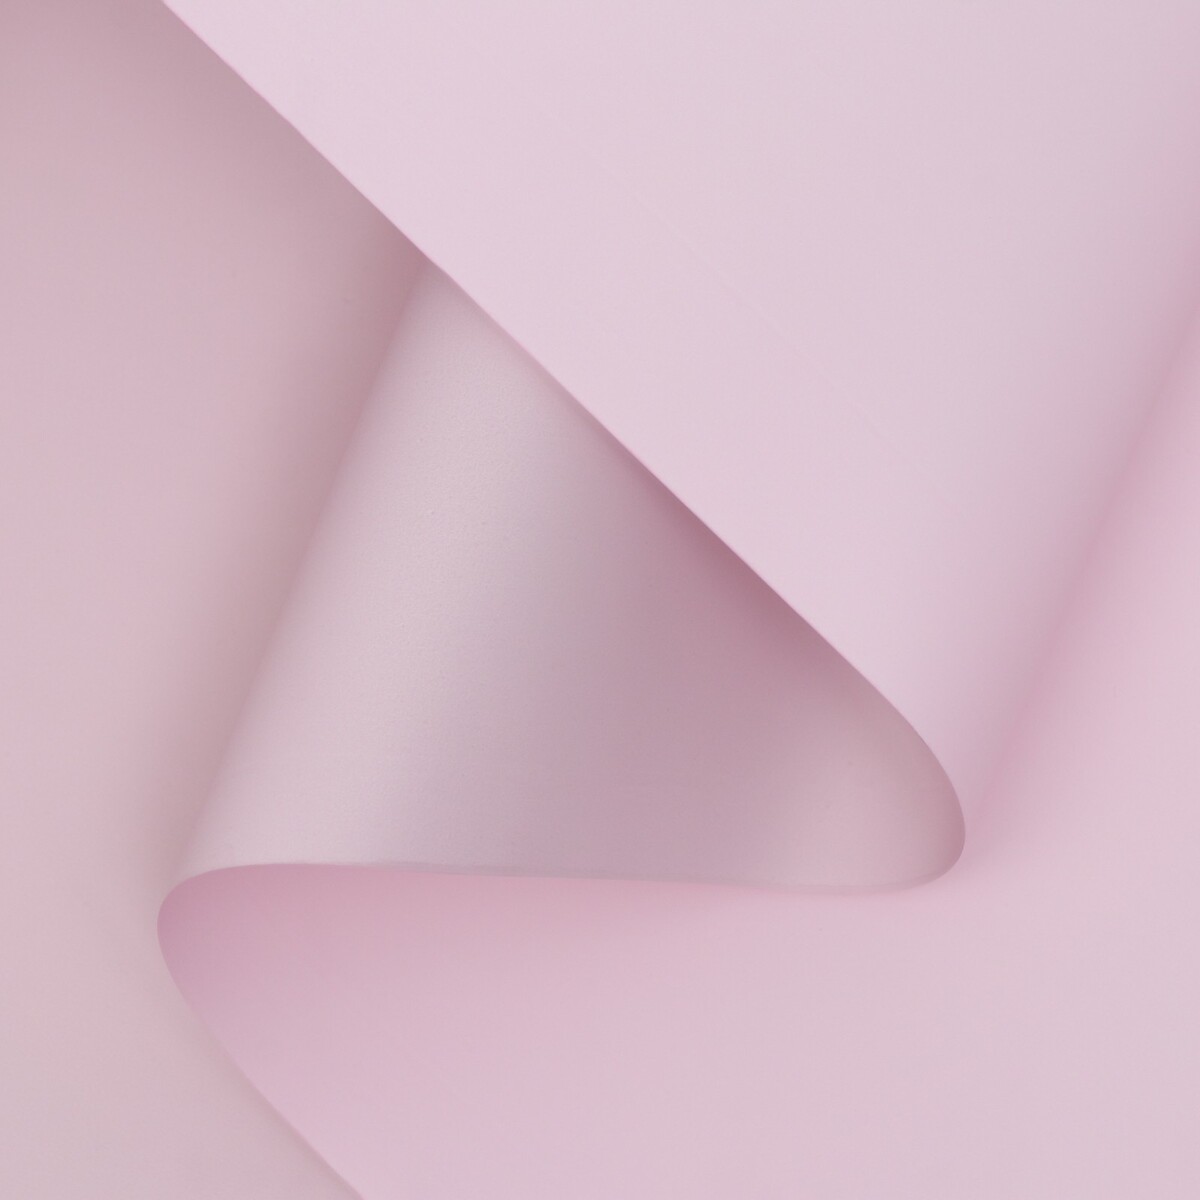 Пленка матовая двухсторонняя , пастельная серия, 65 мкм пастельный, розовый, 0,5 x 10 м пленка матовая двухсторонняя 0 50х10м 65мкм пастельная серия